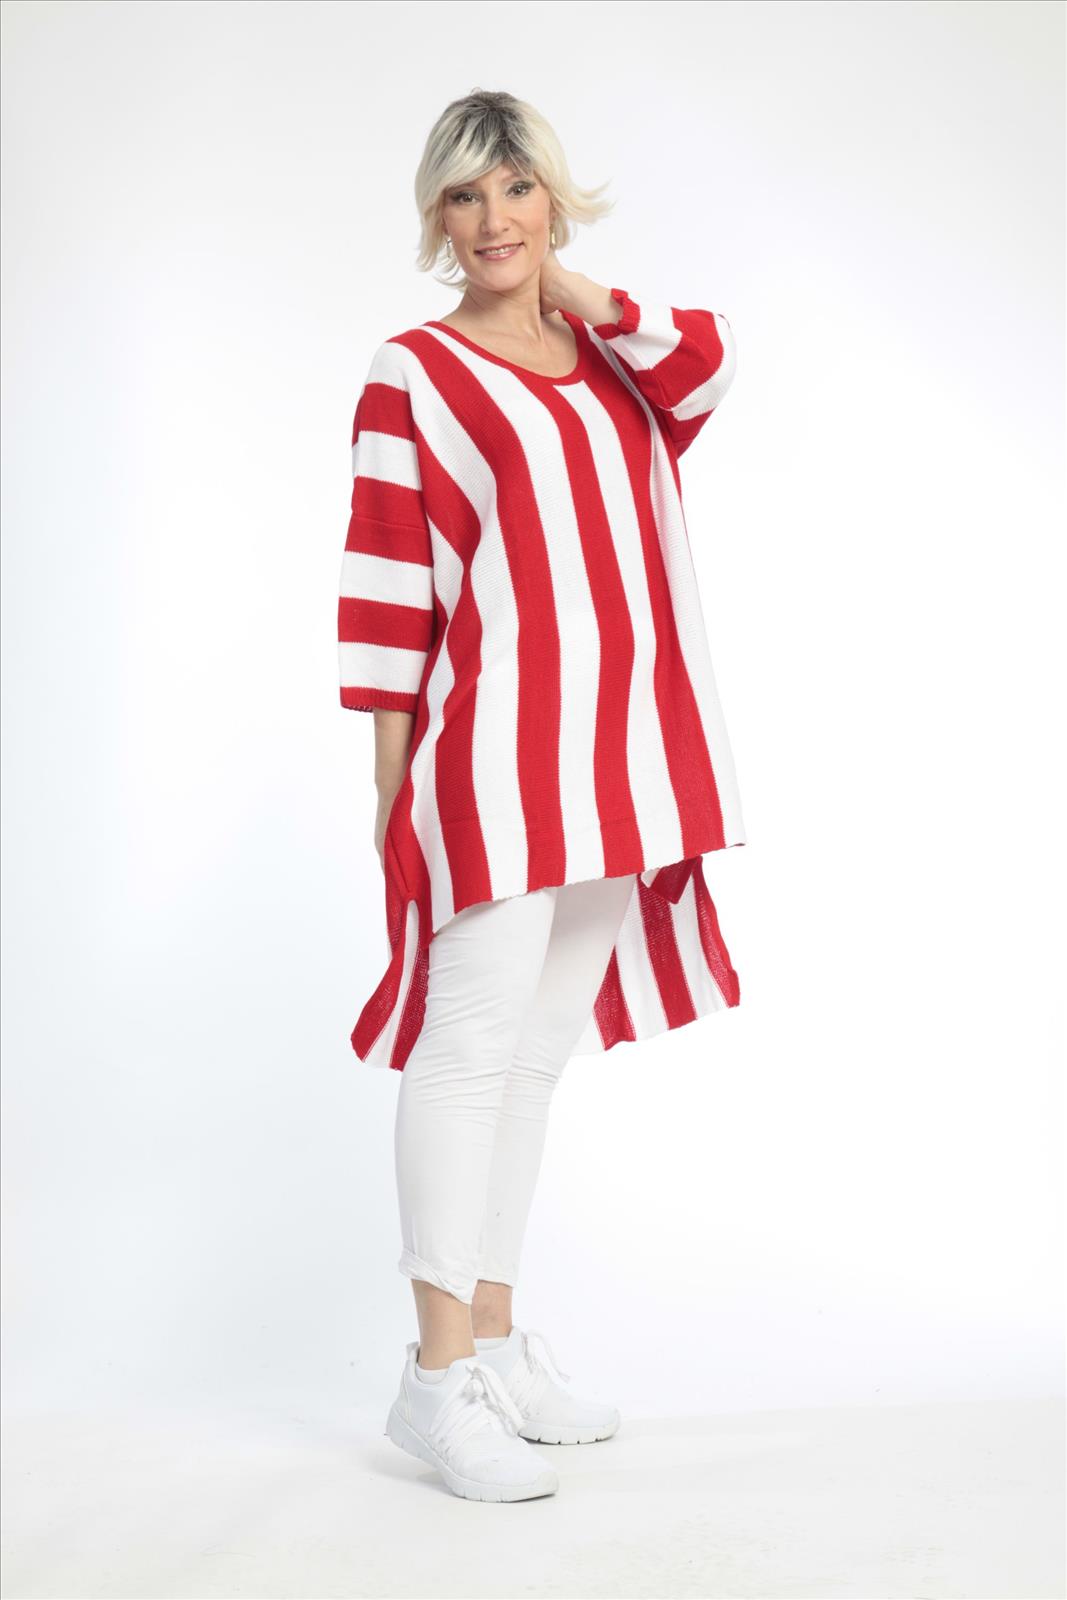 Alltags Pullover in Vokuhila Form aus feiner Strick Qualität, Strick in Rot-Weiß